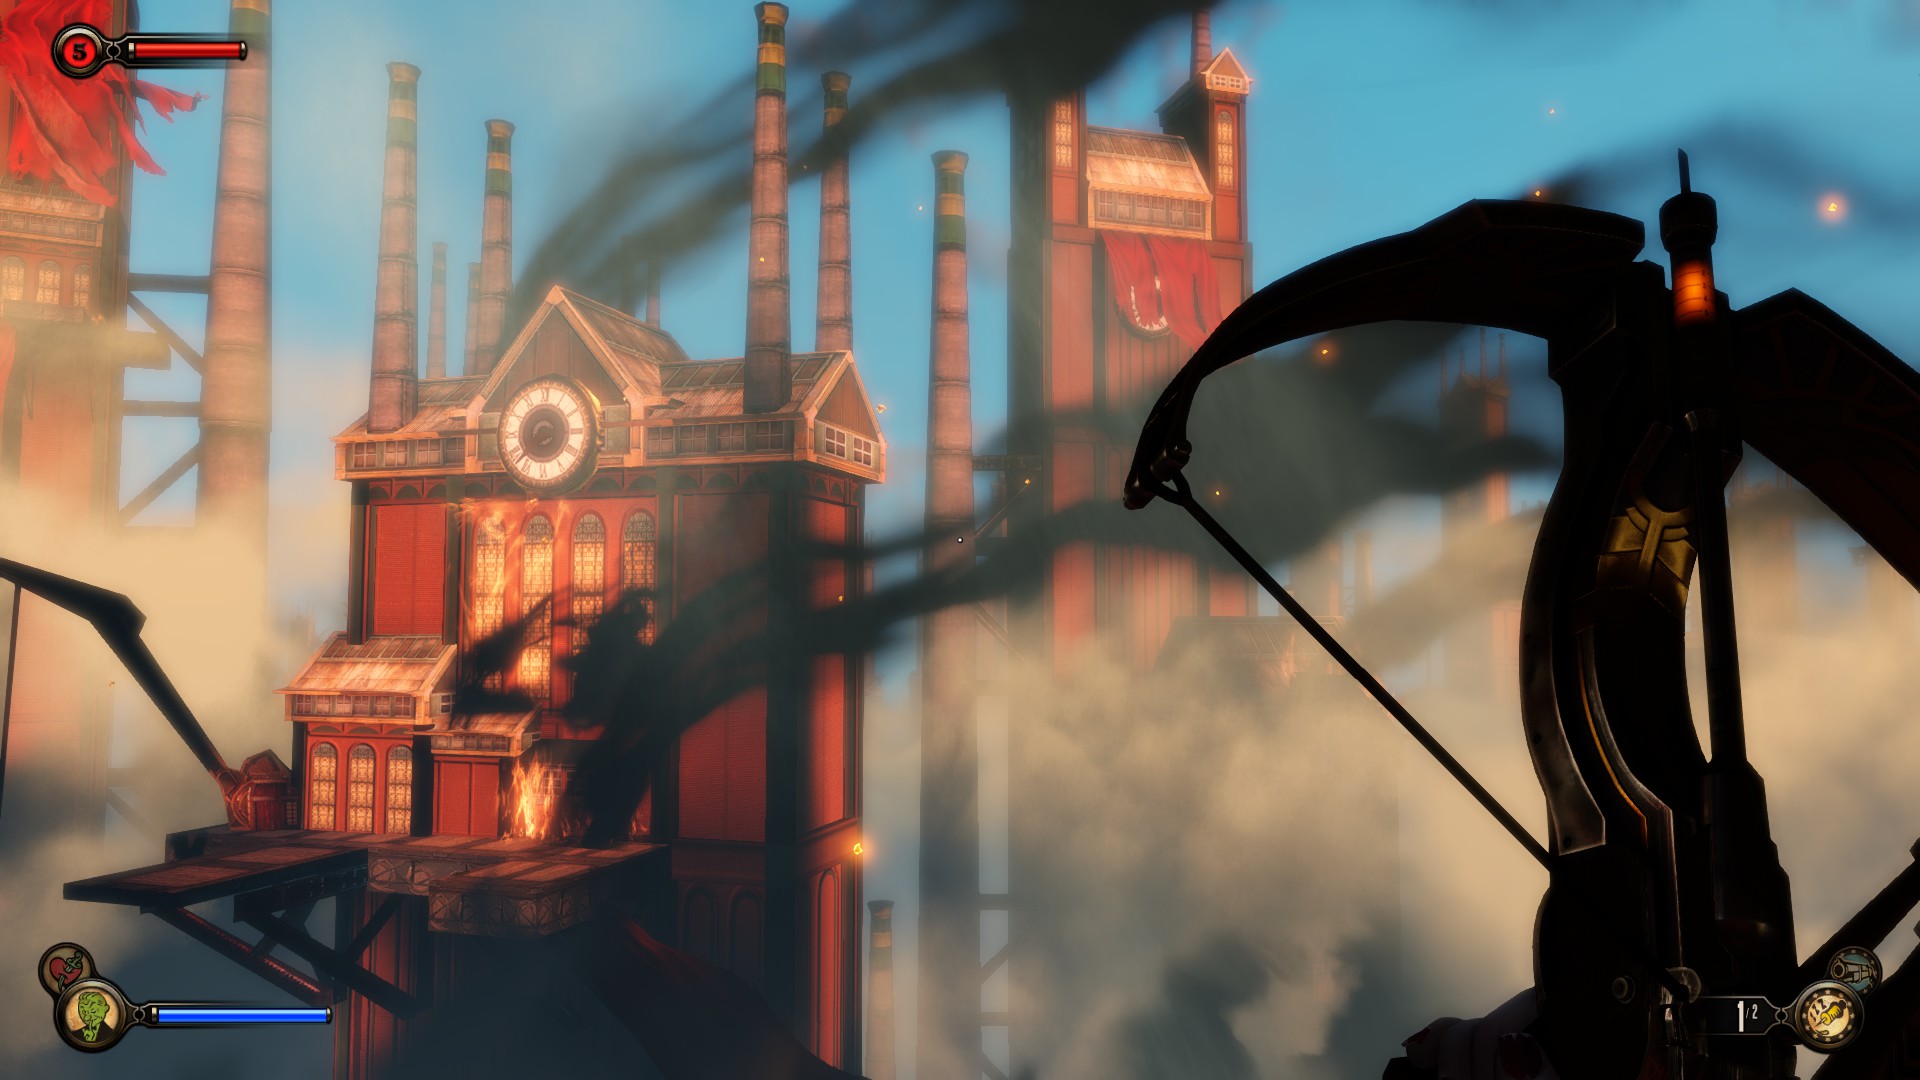 BioShock Infinite: Burial at Sea - Part 2 PC Review